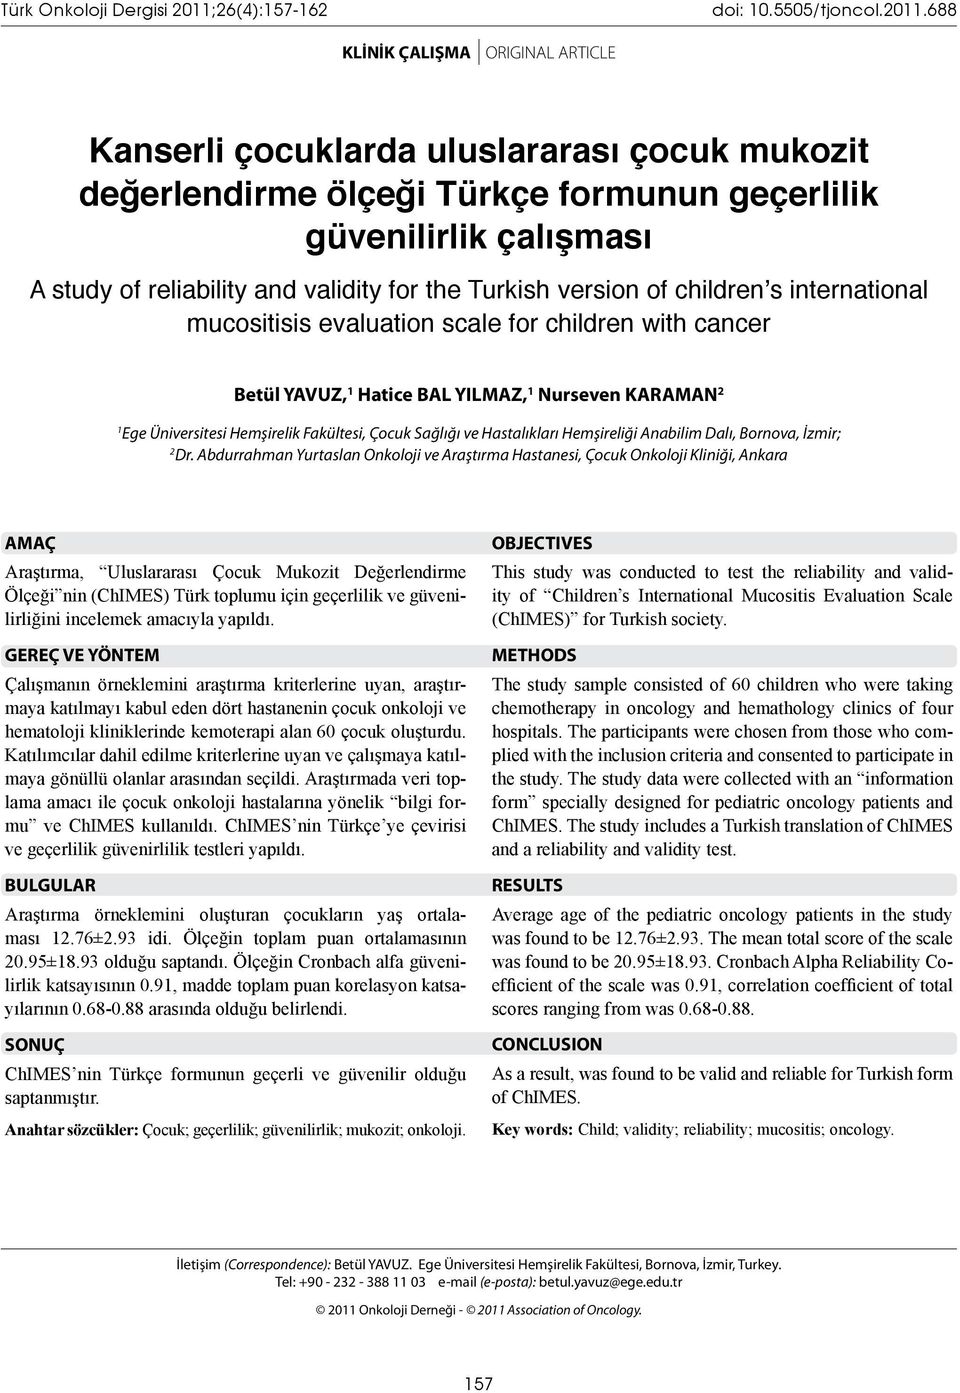 688 KLİNİK ÇALIŞMA ORIGINAL ARTICLE Kanserli çocuklarda uluslararası çocuk mukozit değerlendirme ölçeği Türkçe formunun geçerlilik güvenilirlik çalışması A study of reliability and validity for the